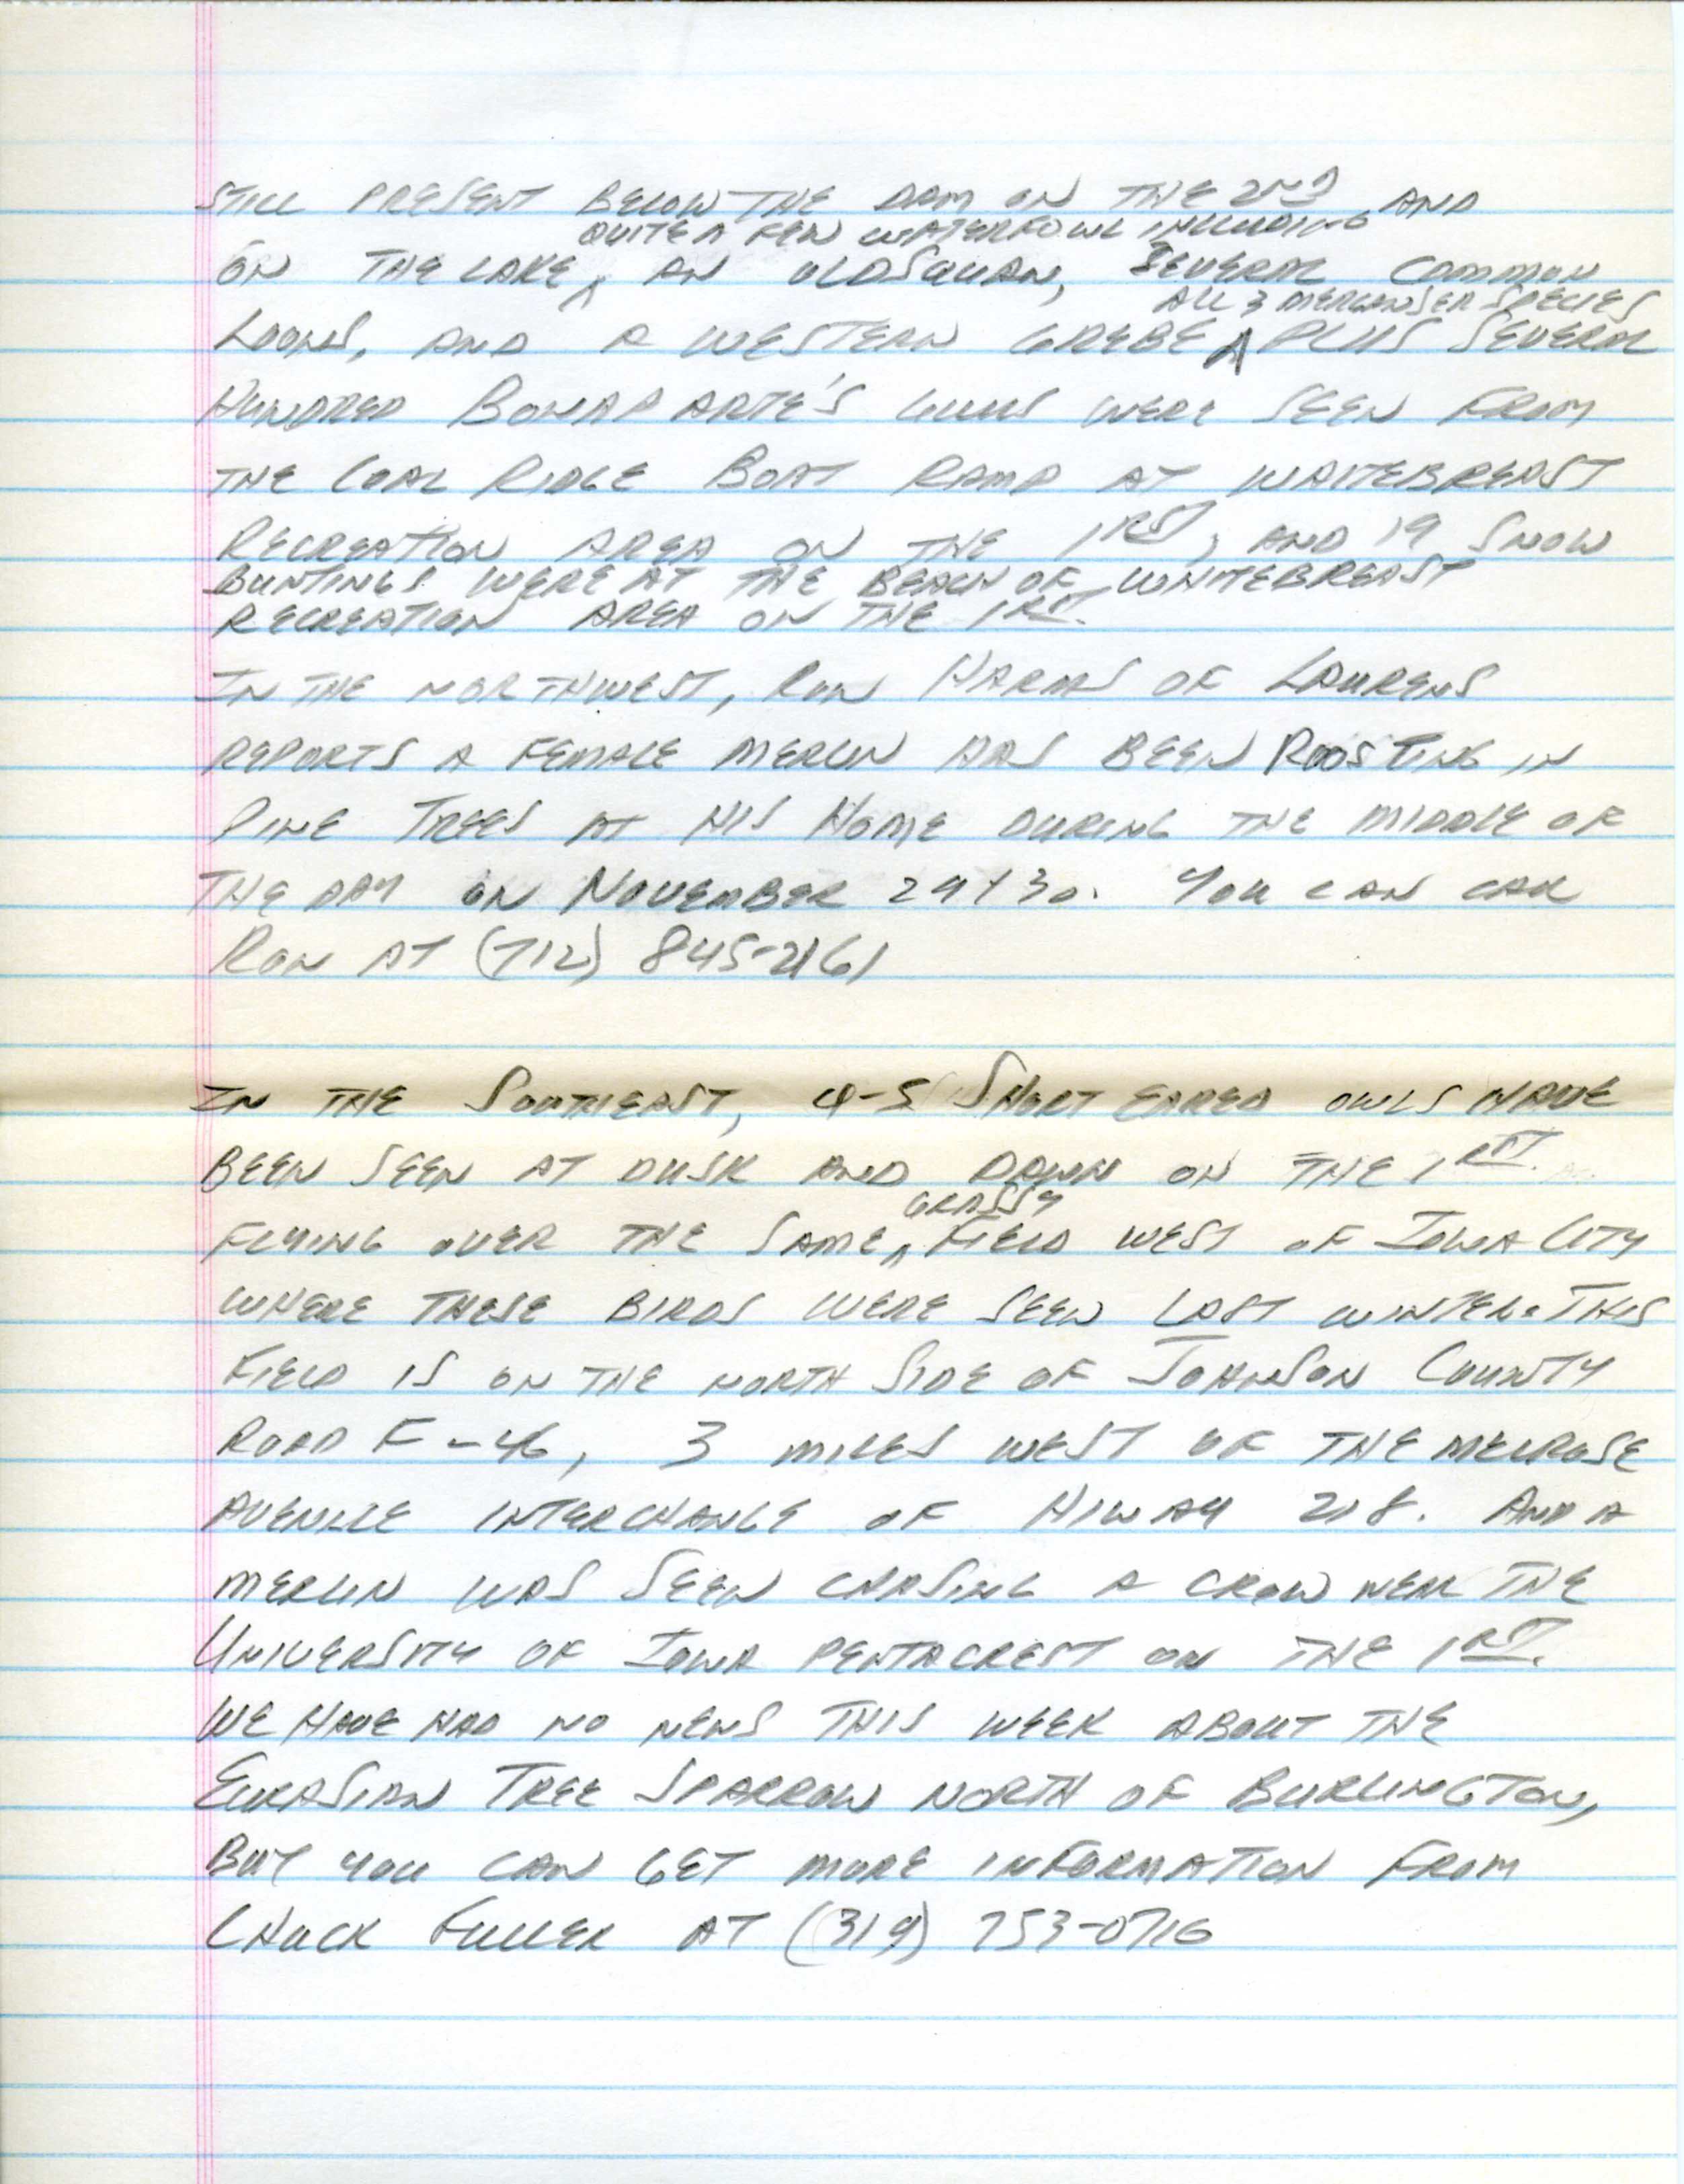 Iowa Birdline update, December 3, 1990, notes